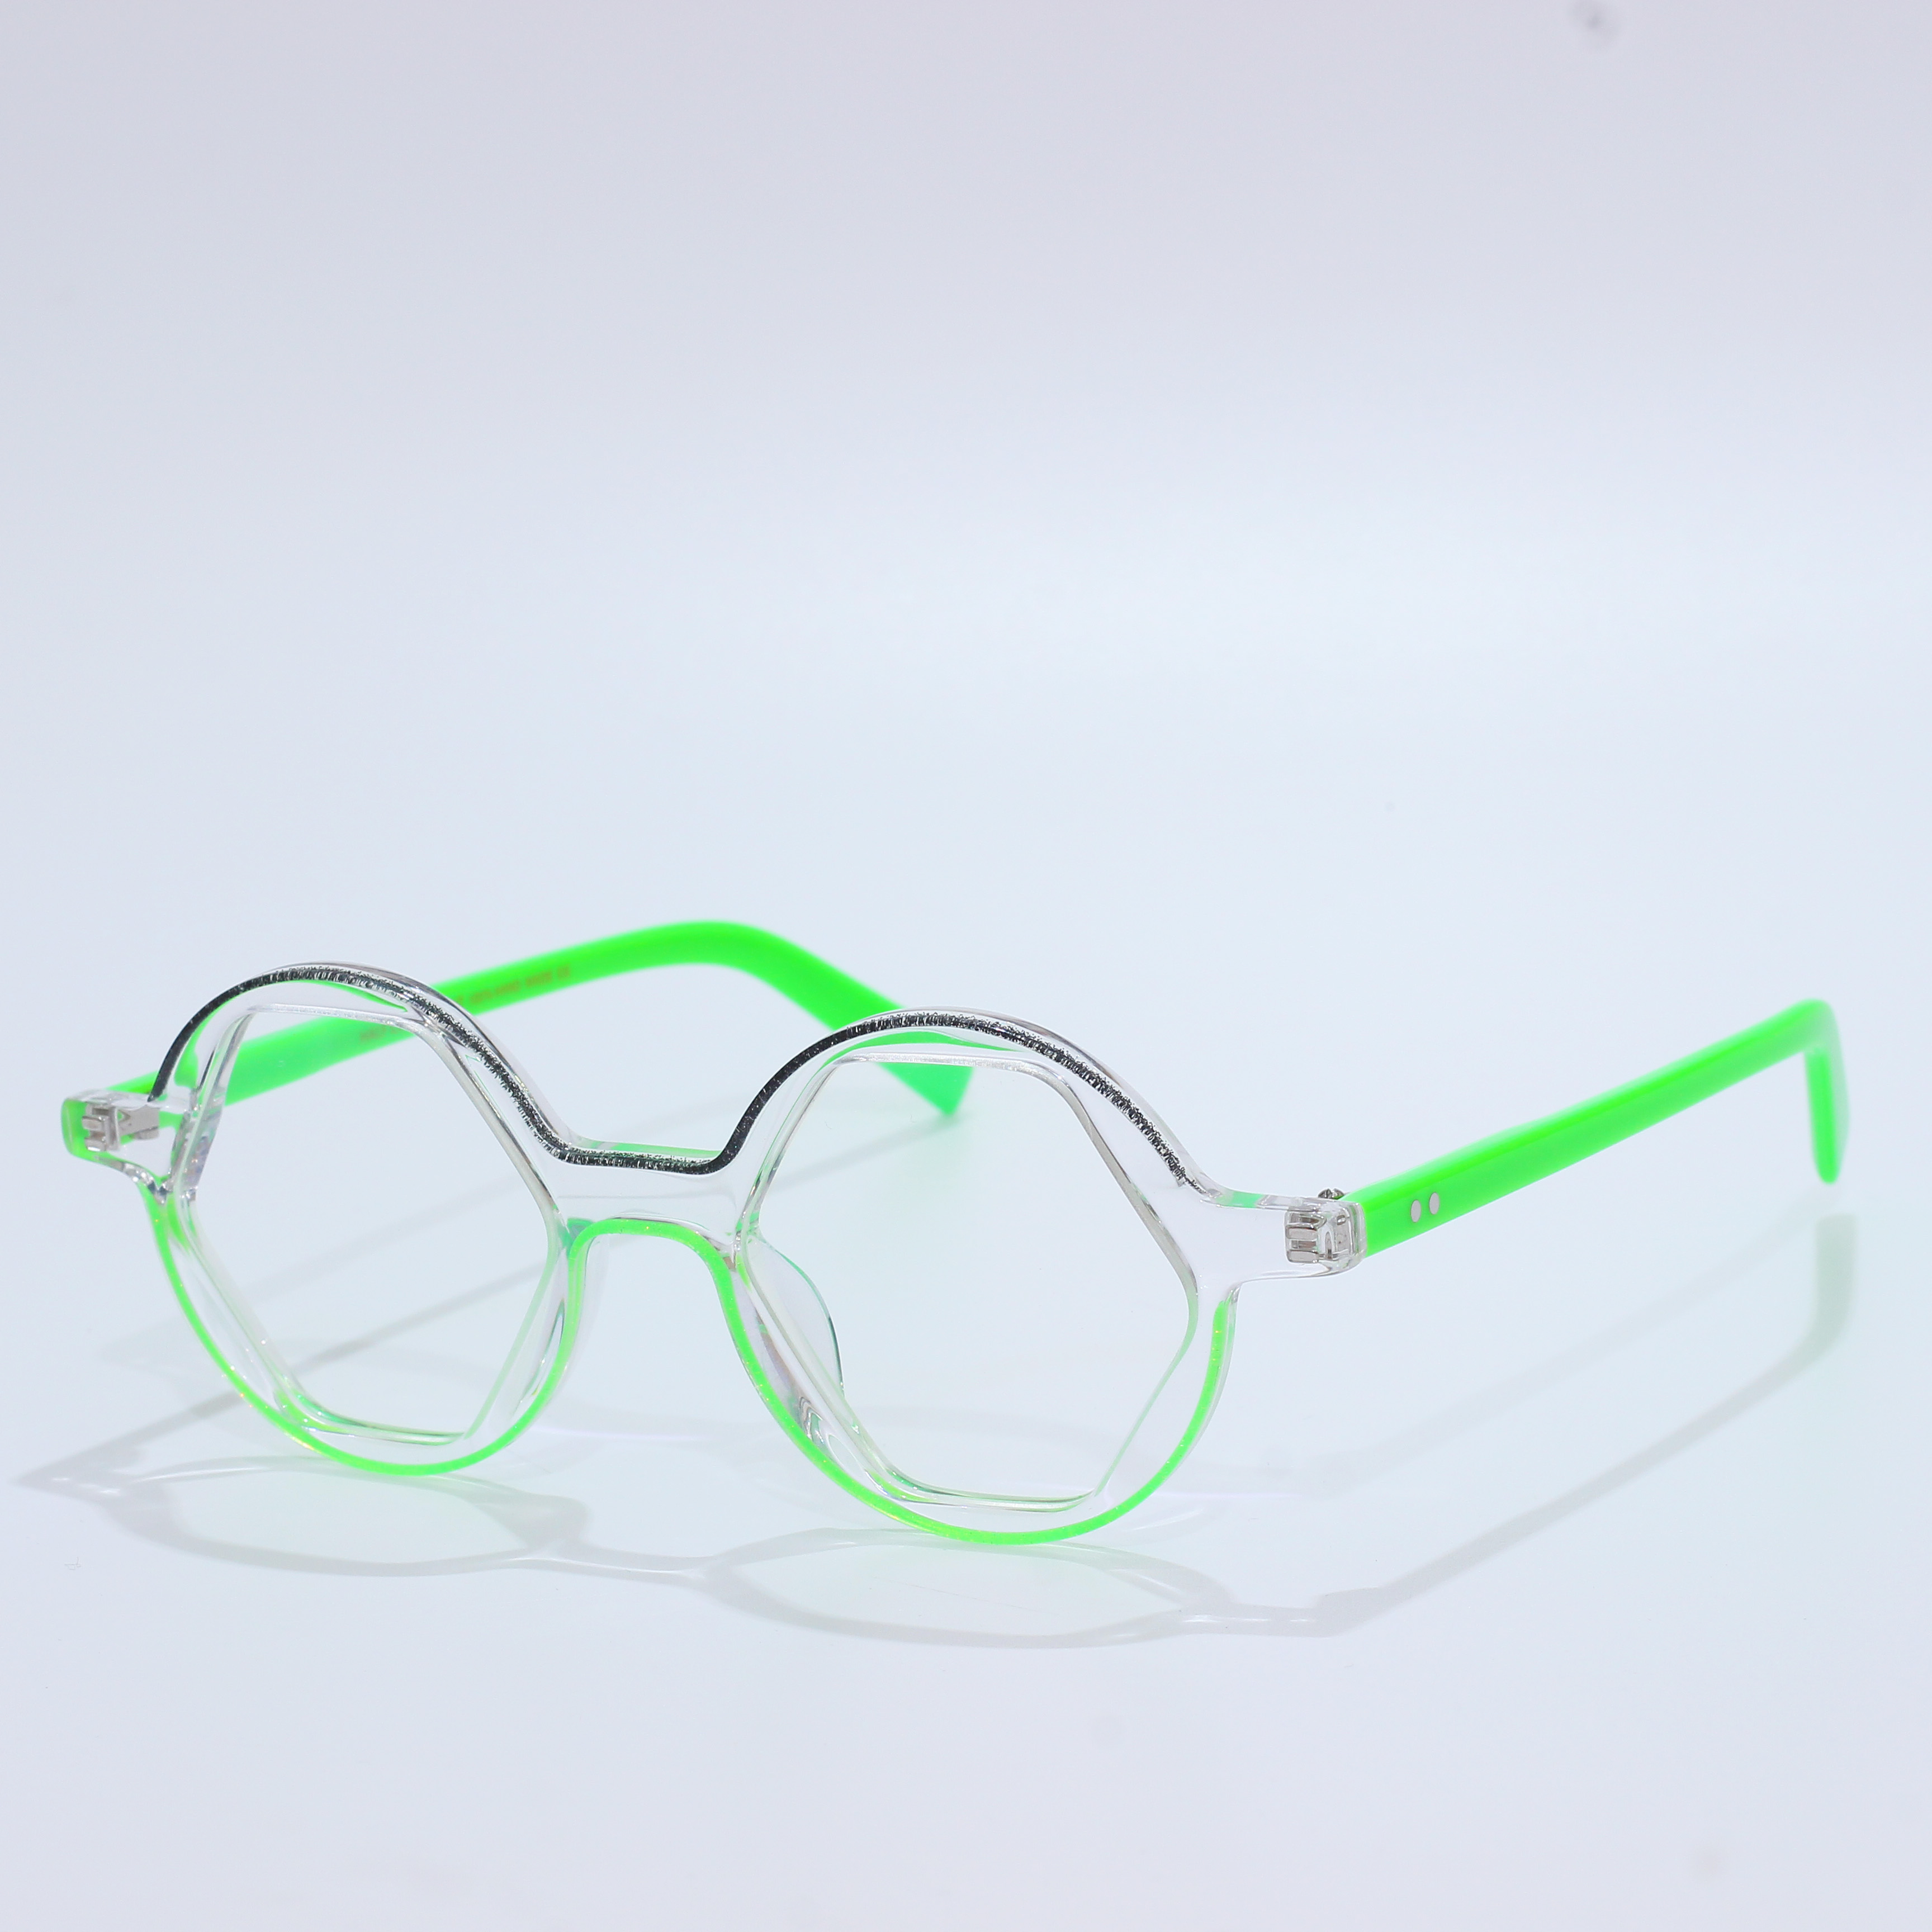 Acetate Mazzucchelli Blue Light Glasses Eyeglasses Frame (4)